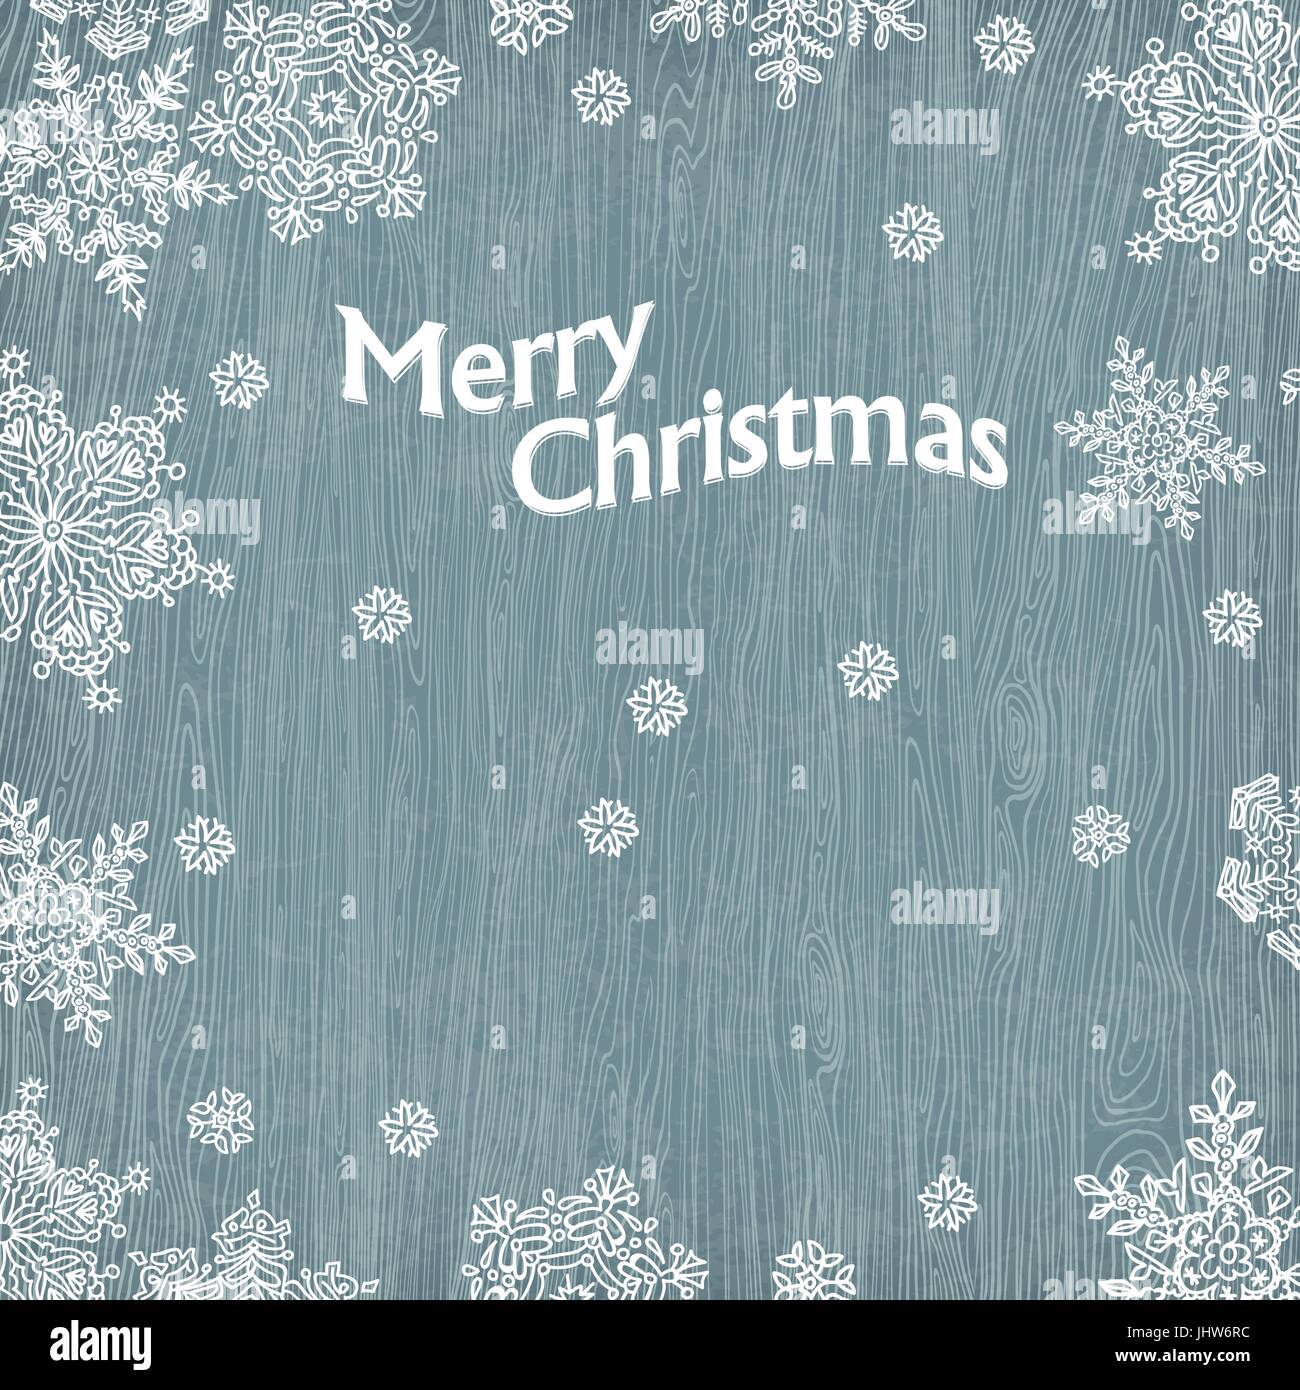 Weihnachtsgrüße mit Schneeflocken auf Holz Textur. Vektor-Illustration, EPS10. Stock Vektor